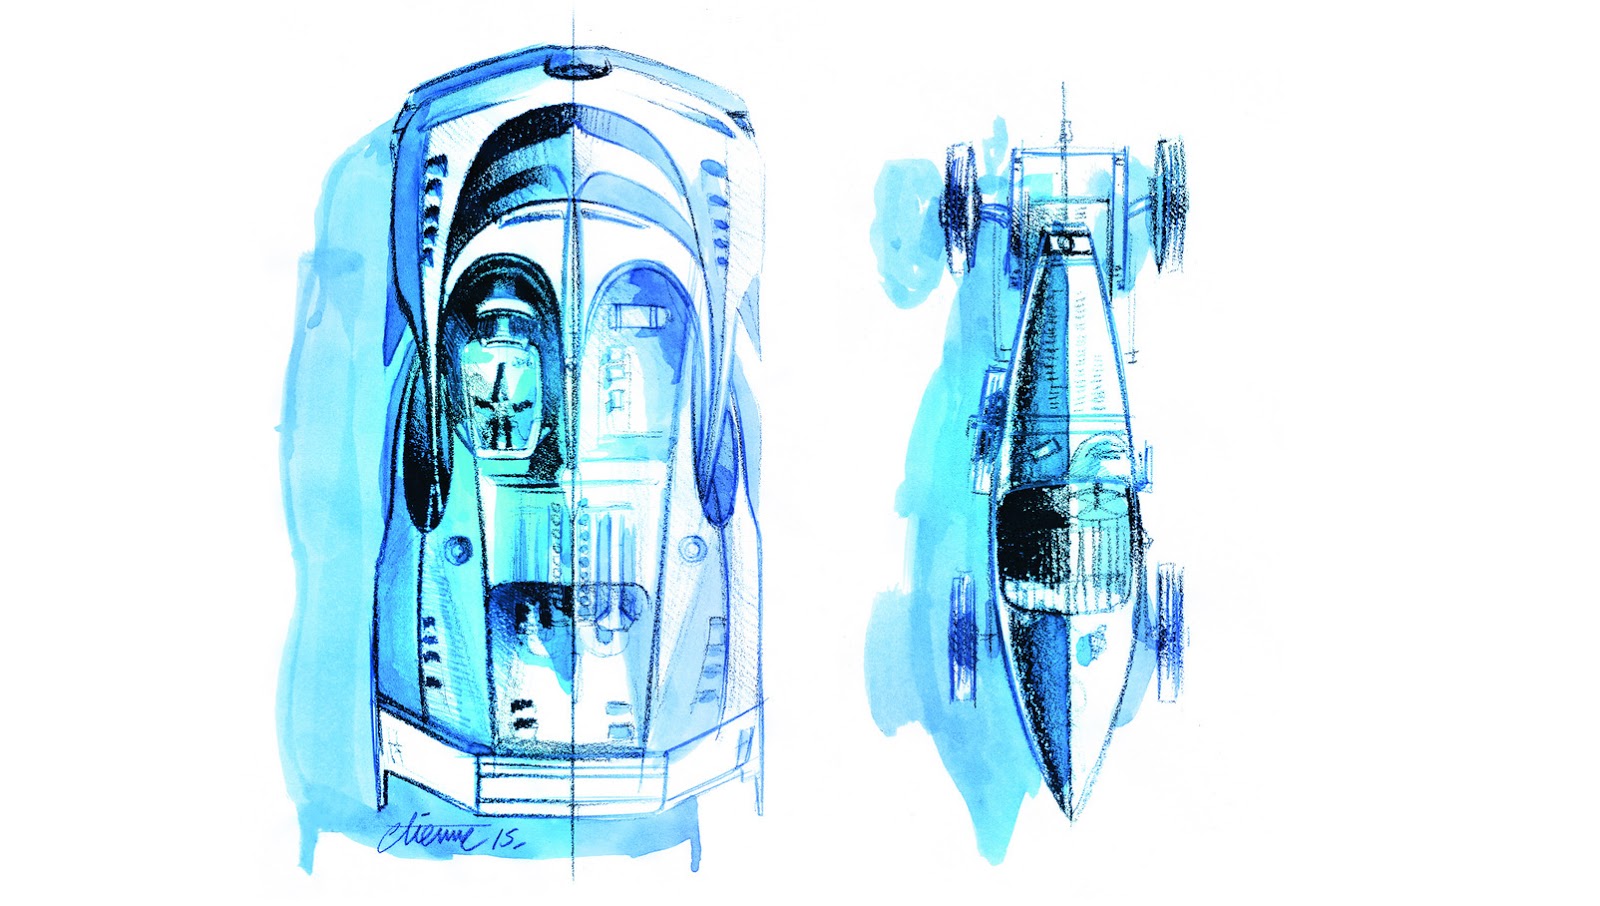 Bugatti Vision Gran Turismo (2015) - Design Sketch - Top view with Bugatti Type 35